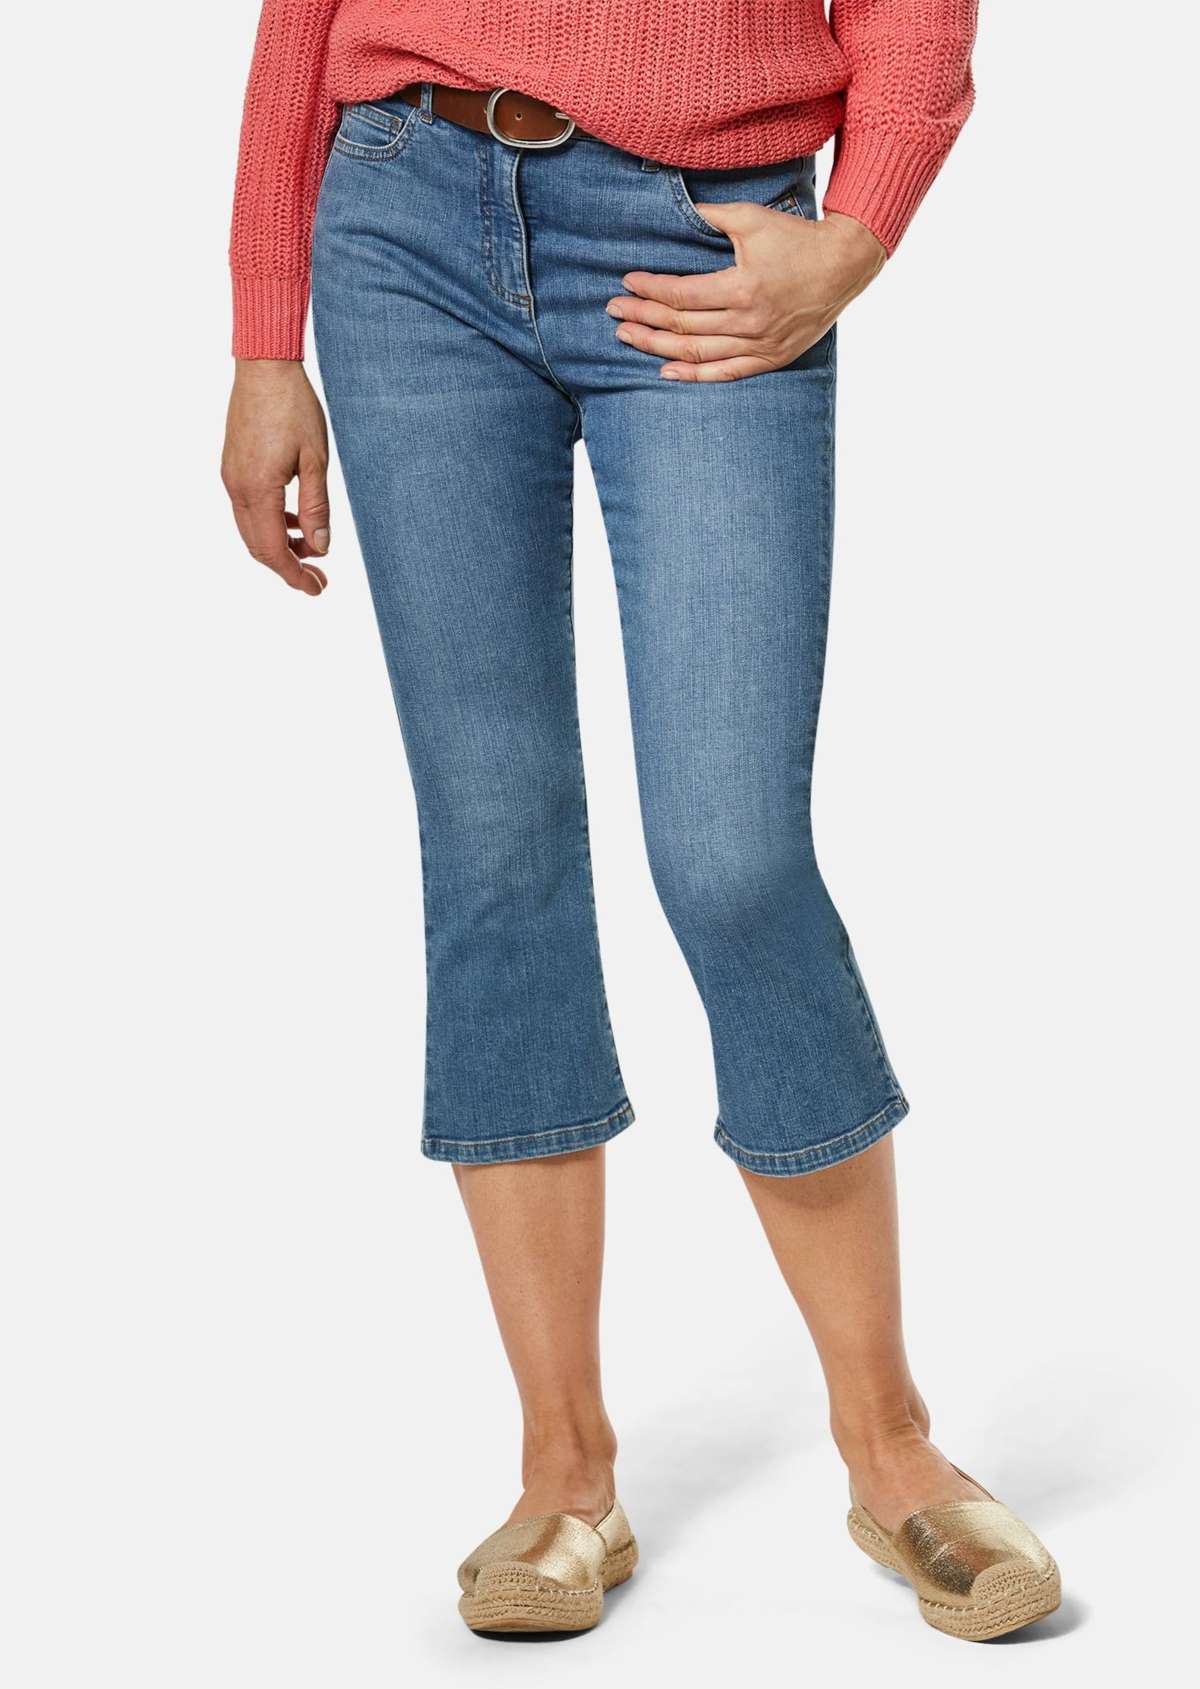 Укороченные джинсы с расклешенным подолом